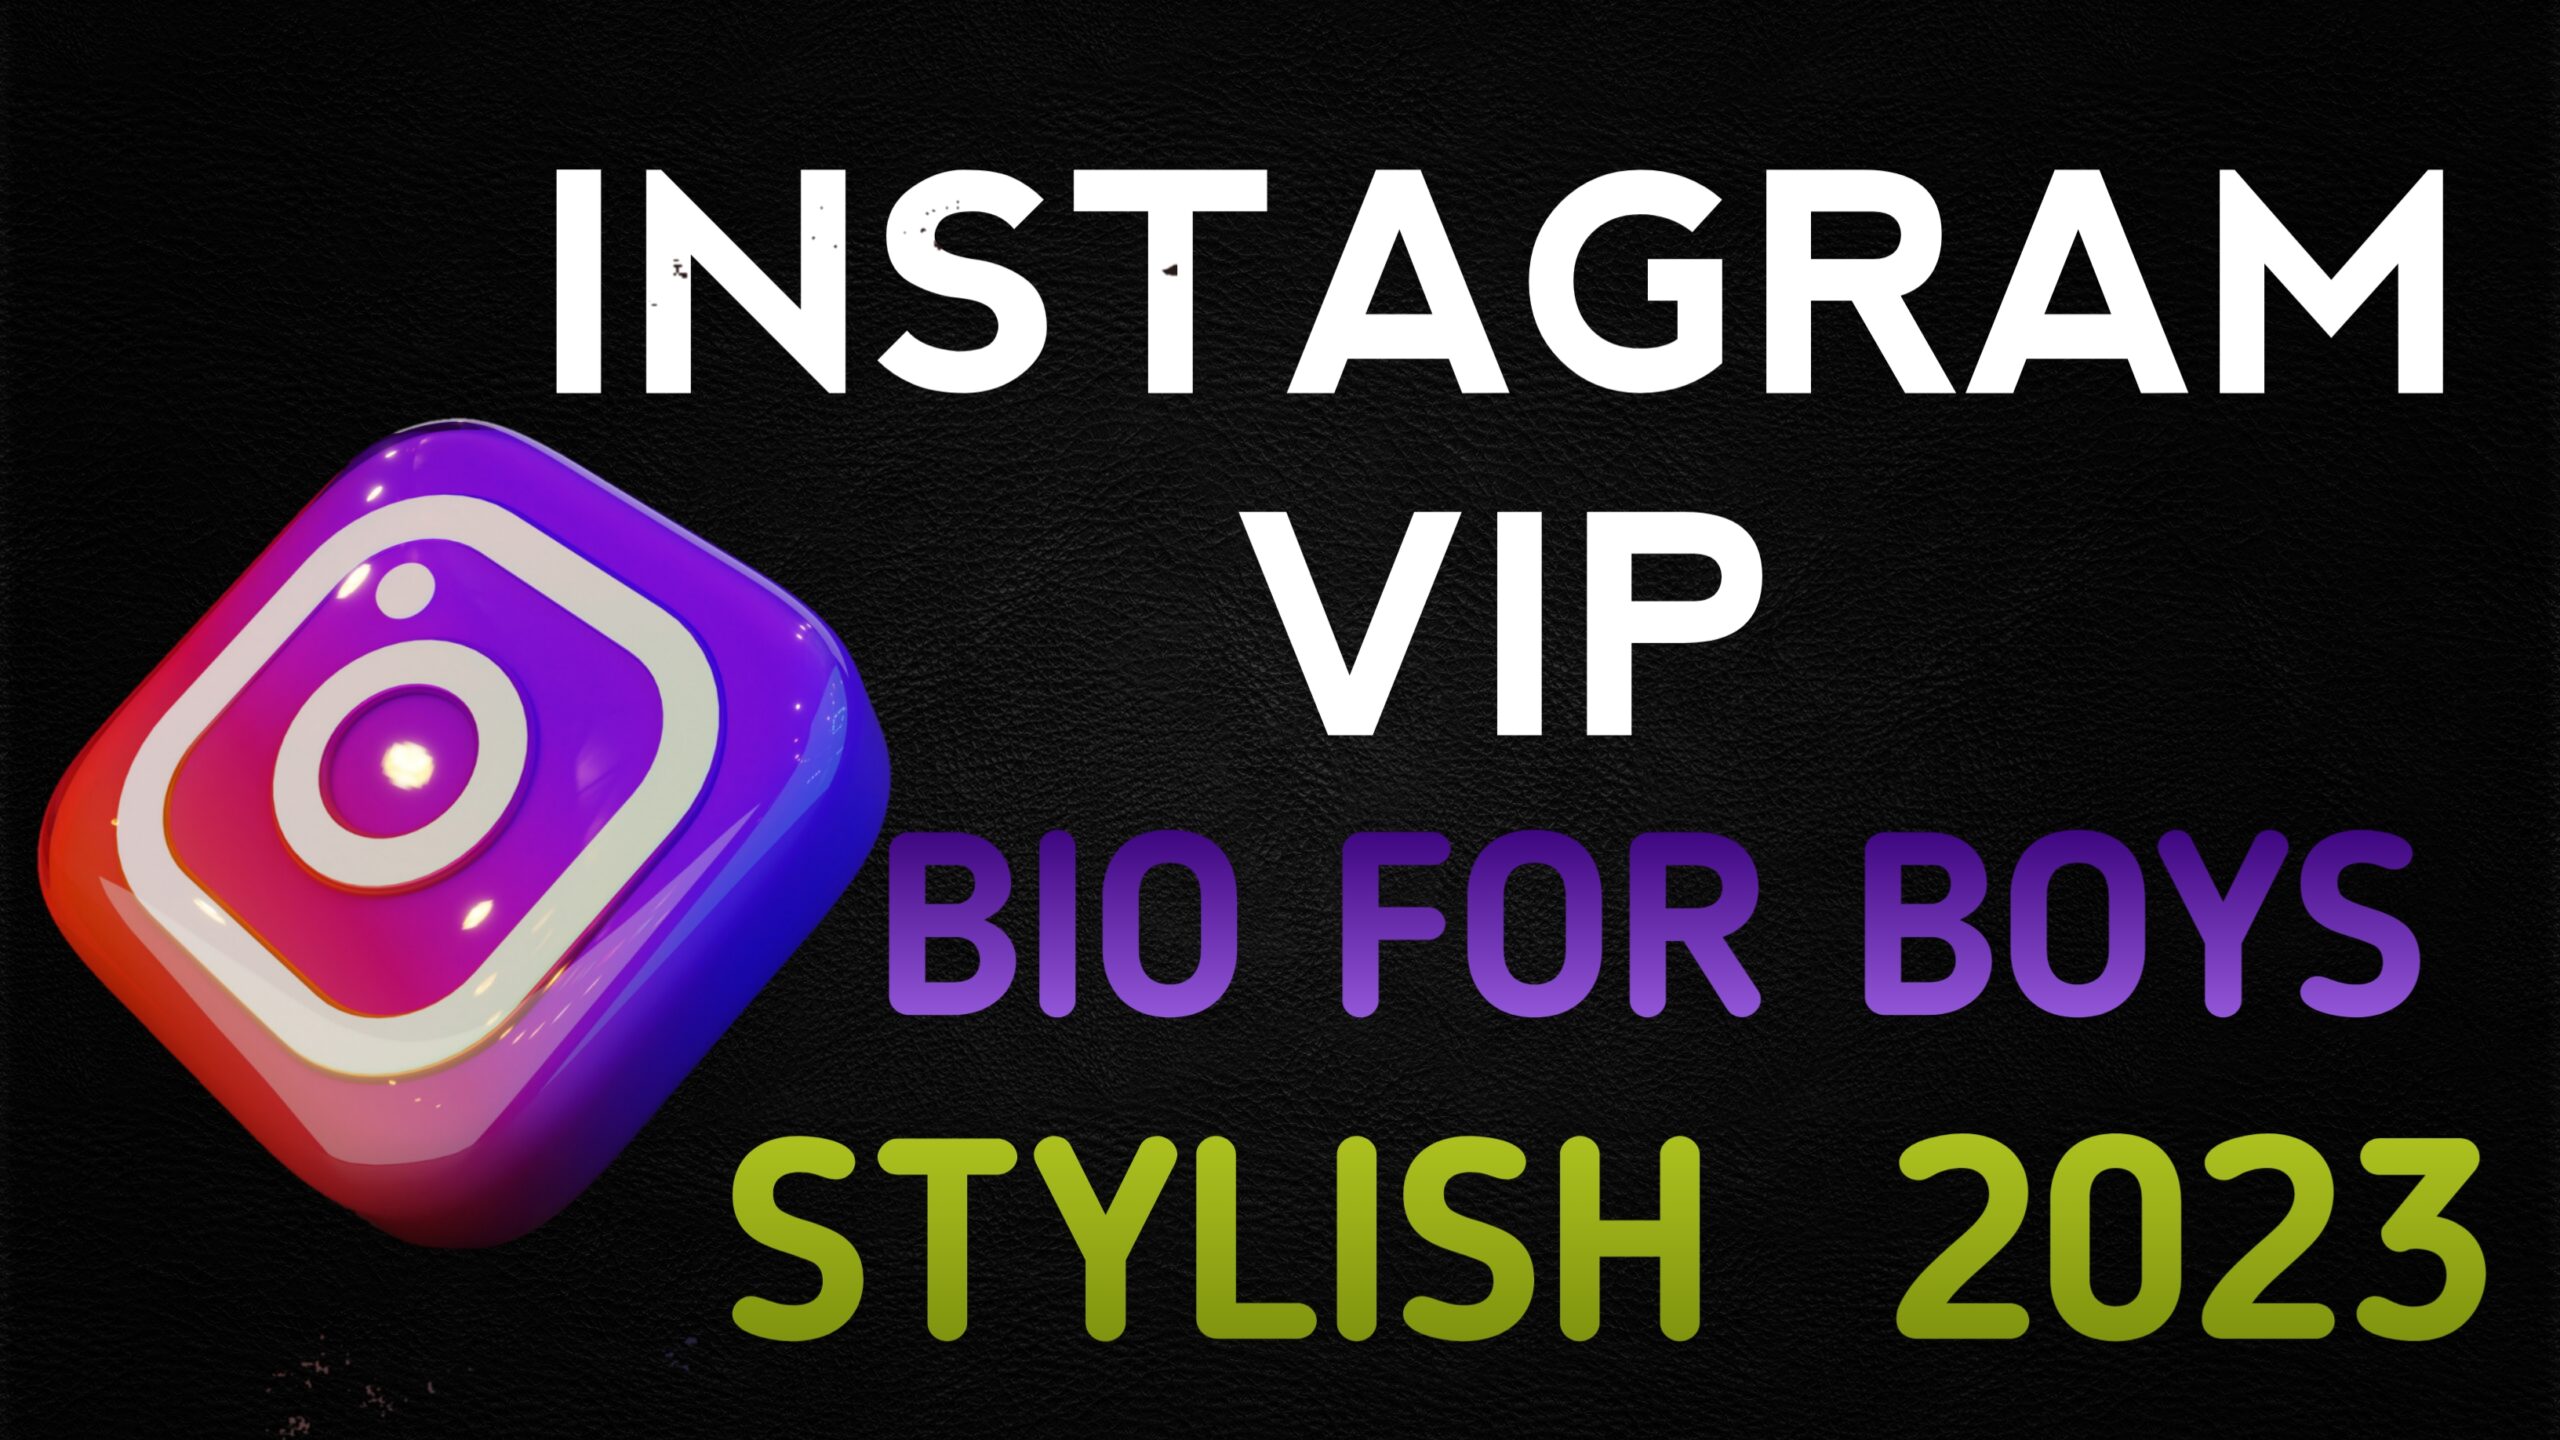 Instagram Vip Bio For Boy Stylish Font 2023 – NewBioIdea